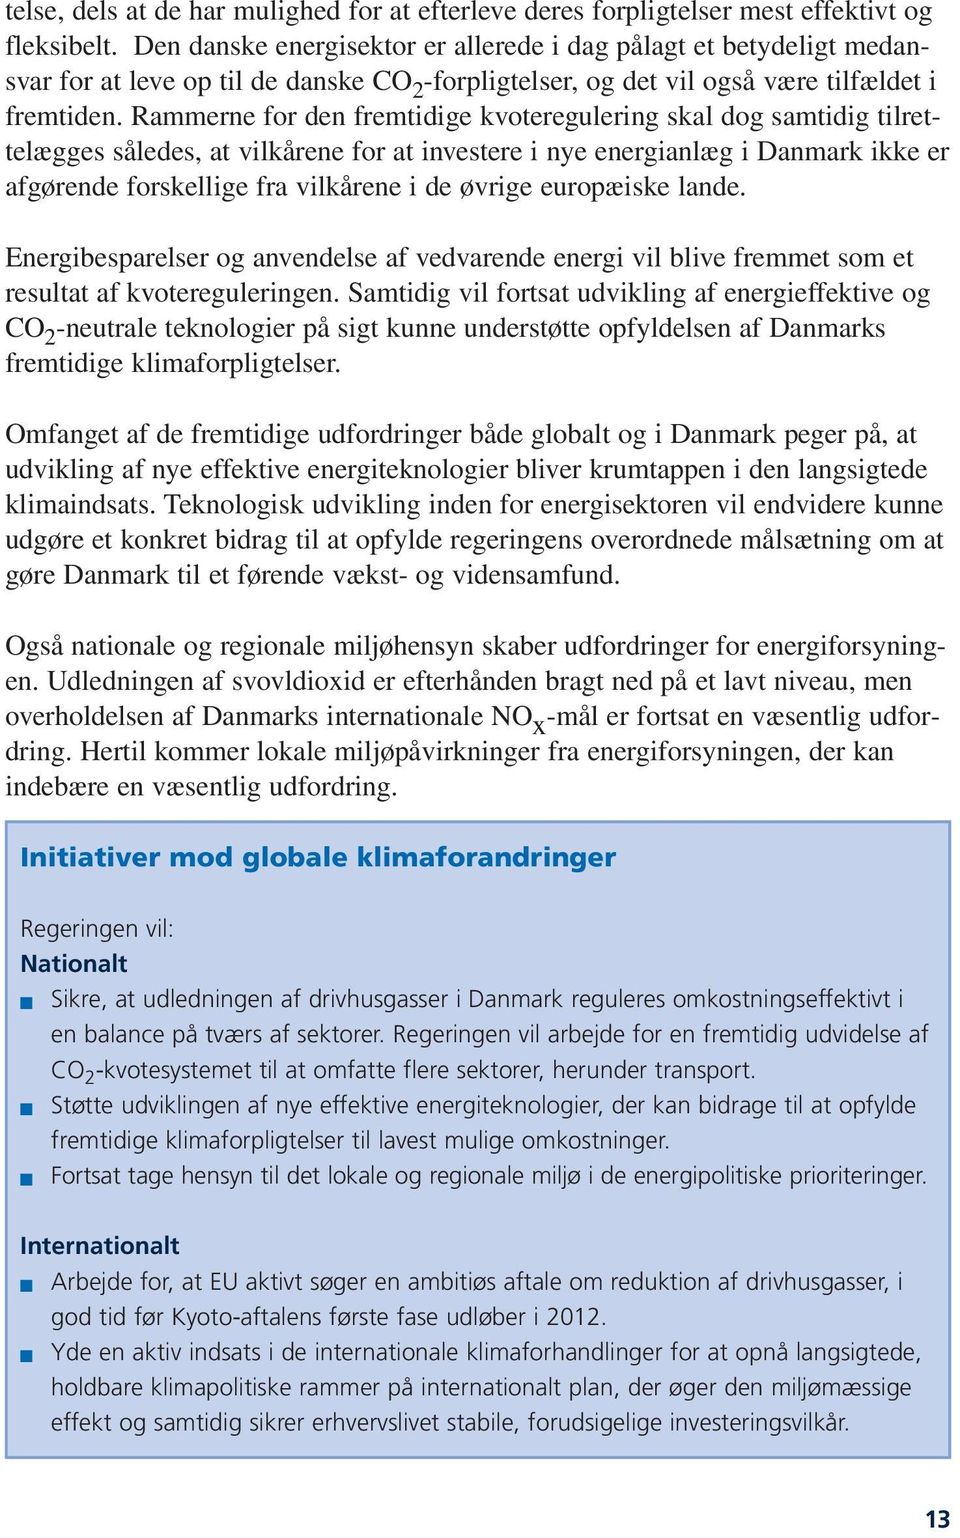 Rammerne for den fremtidige kvoteregulering skal dog samtidig tilrettelægges således, at vilkårene for at investere i nye energianlæg i Danmark ikke er afgørende forskellige fra vilkårene i de øvrige